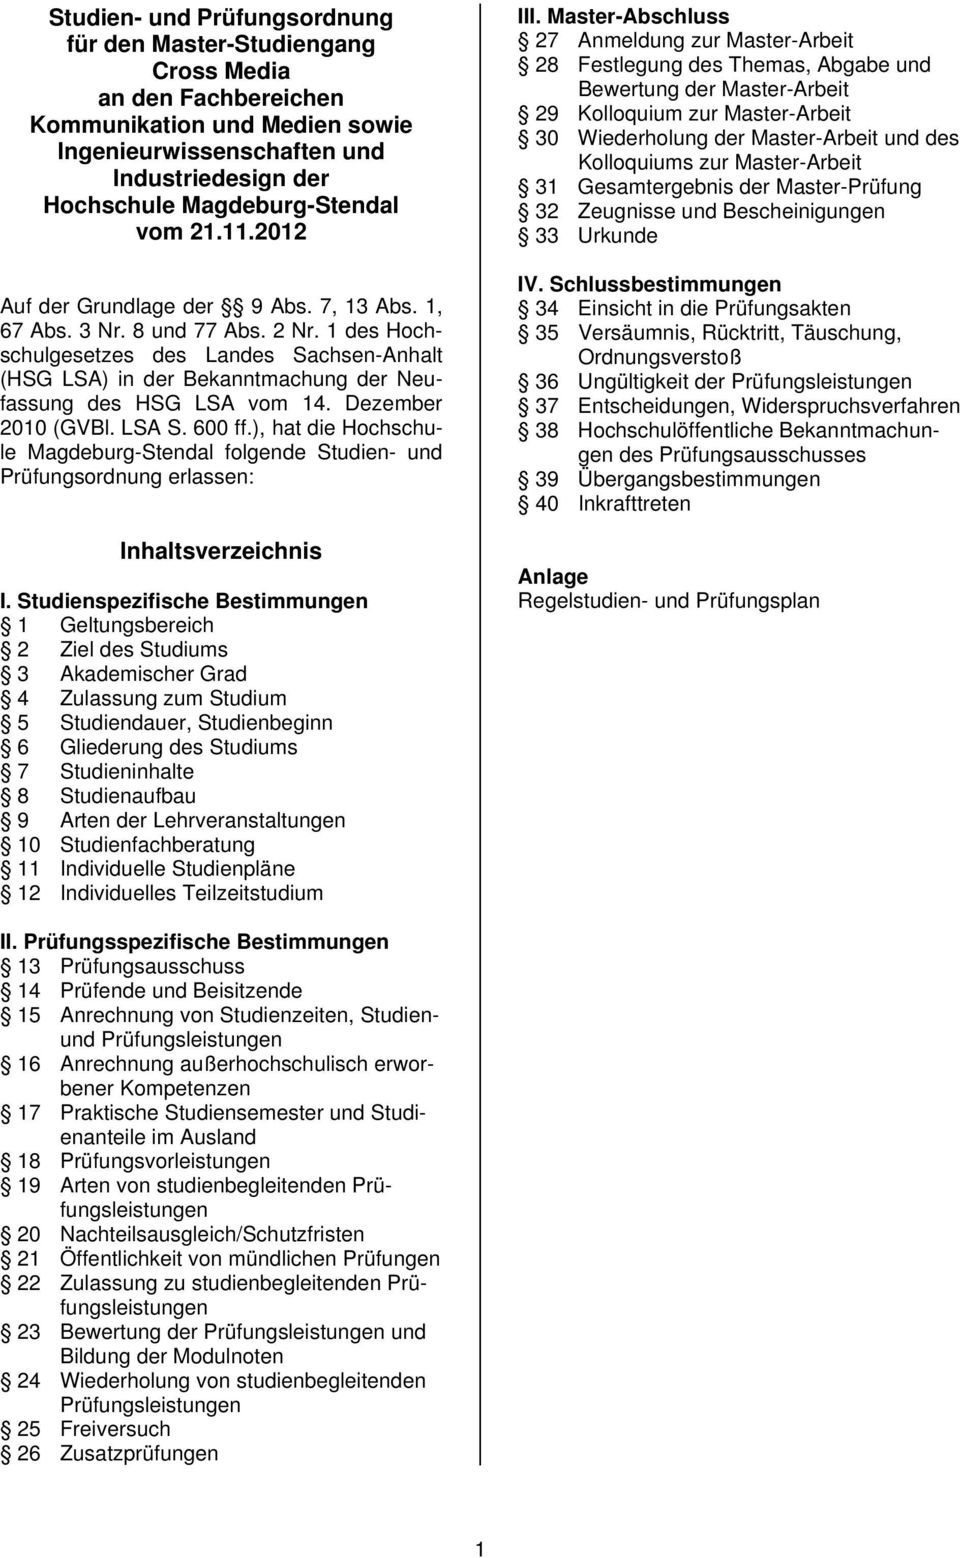 1 des Hochschulgesetzes des Landes Sachsen-Anhalt (HSG LSA) in der Bekanntmachung der Neufassung des HSG LSA vom 14. Dezember 2010 (GVBl. LSA S. 600 ff.